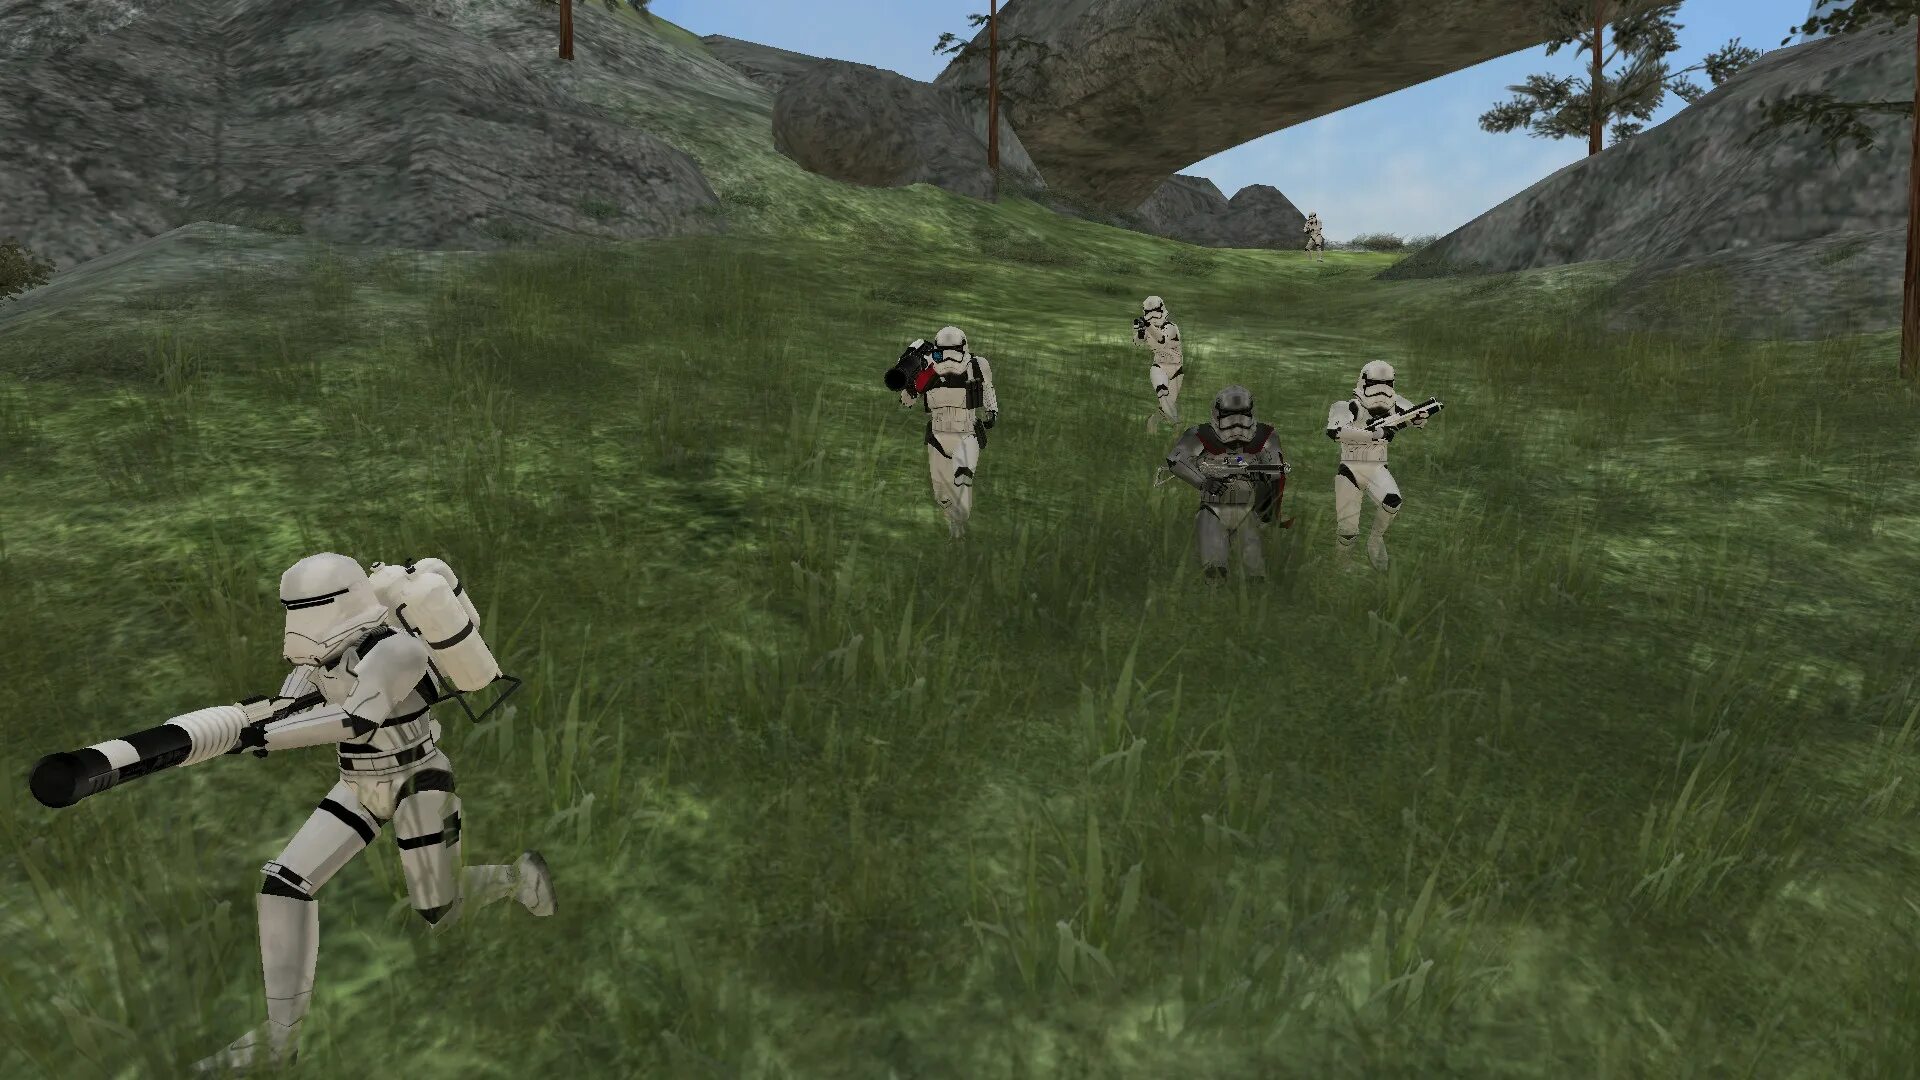 Стар ВАРС батлфронт 2 2004. Star Wars: Battlefront (игра, 2004). Стар ВАРС батлфронт 2004 моды. Star Wars Battlefront 2 Mods.